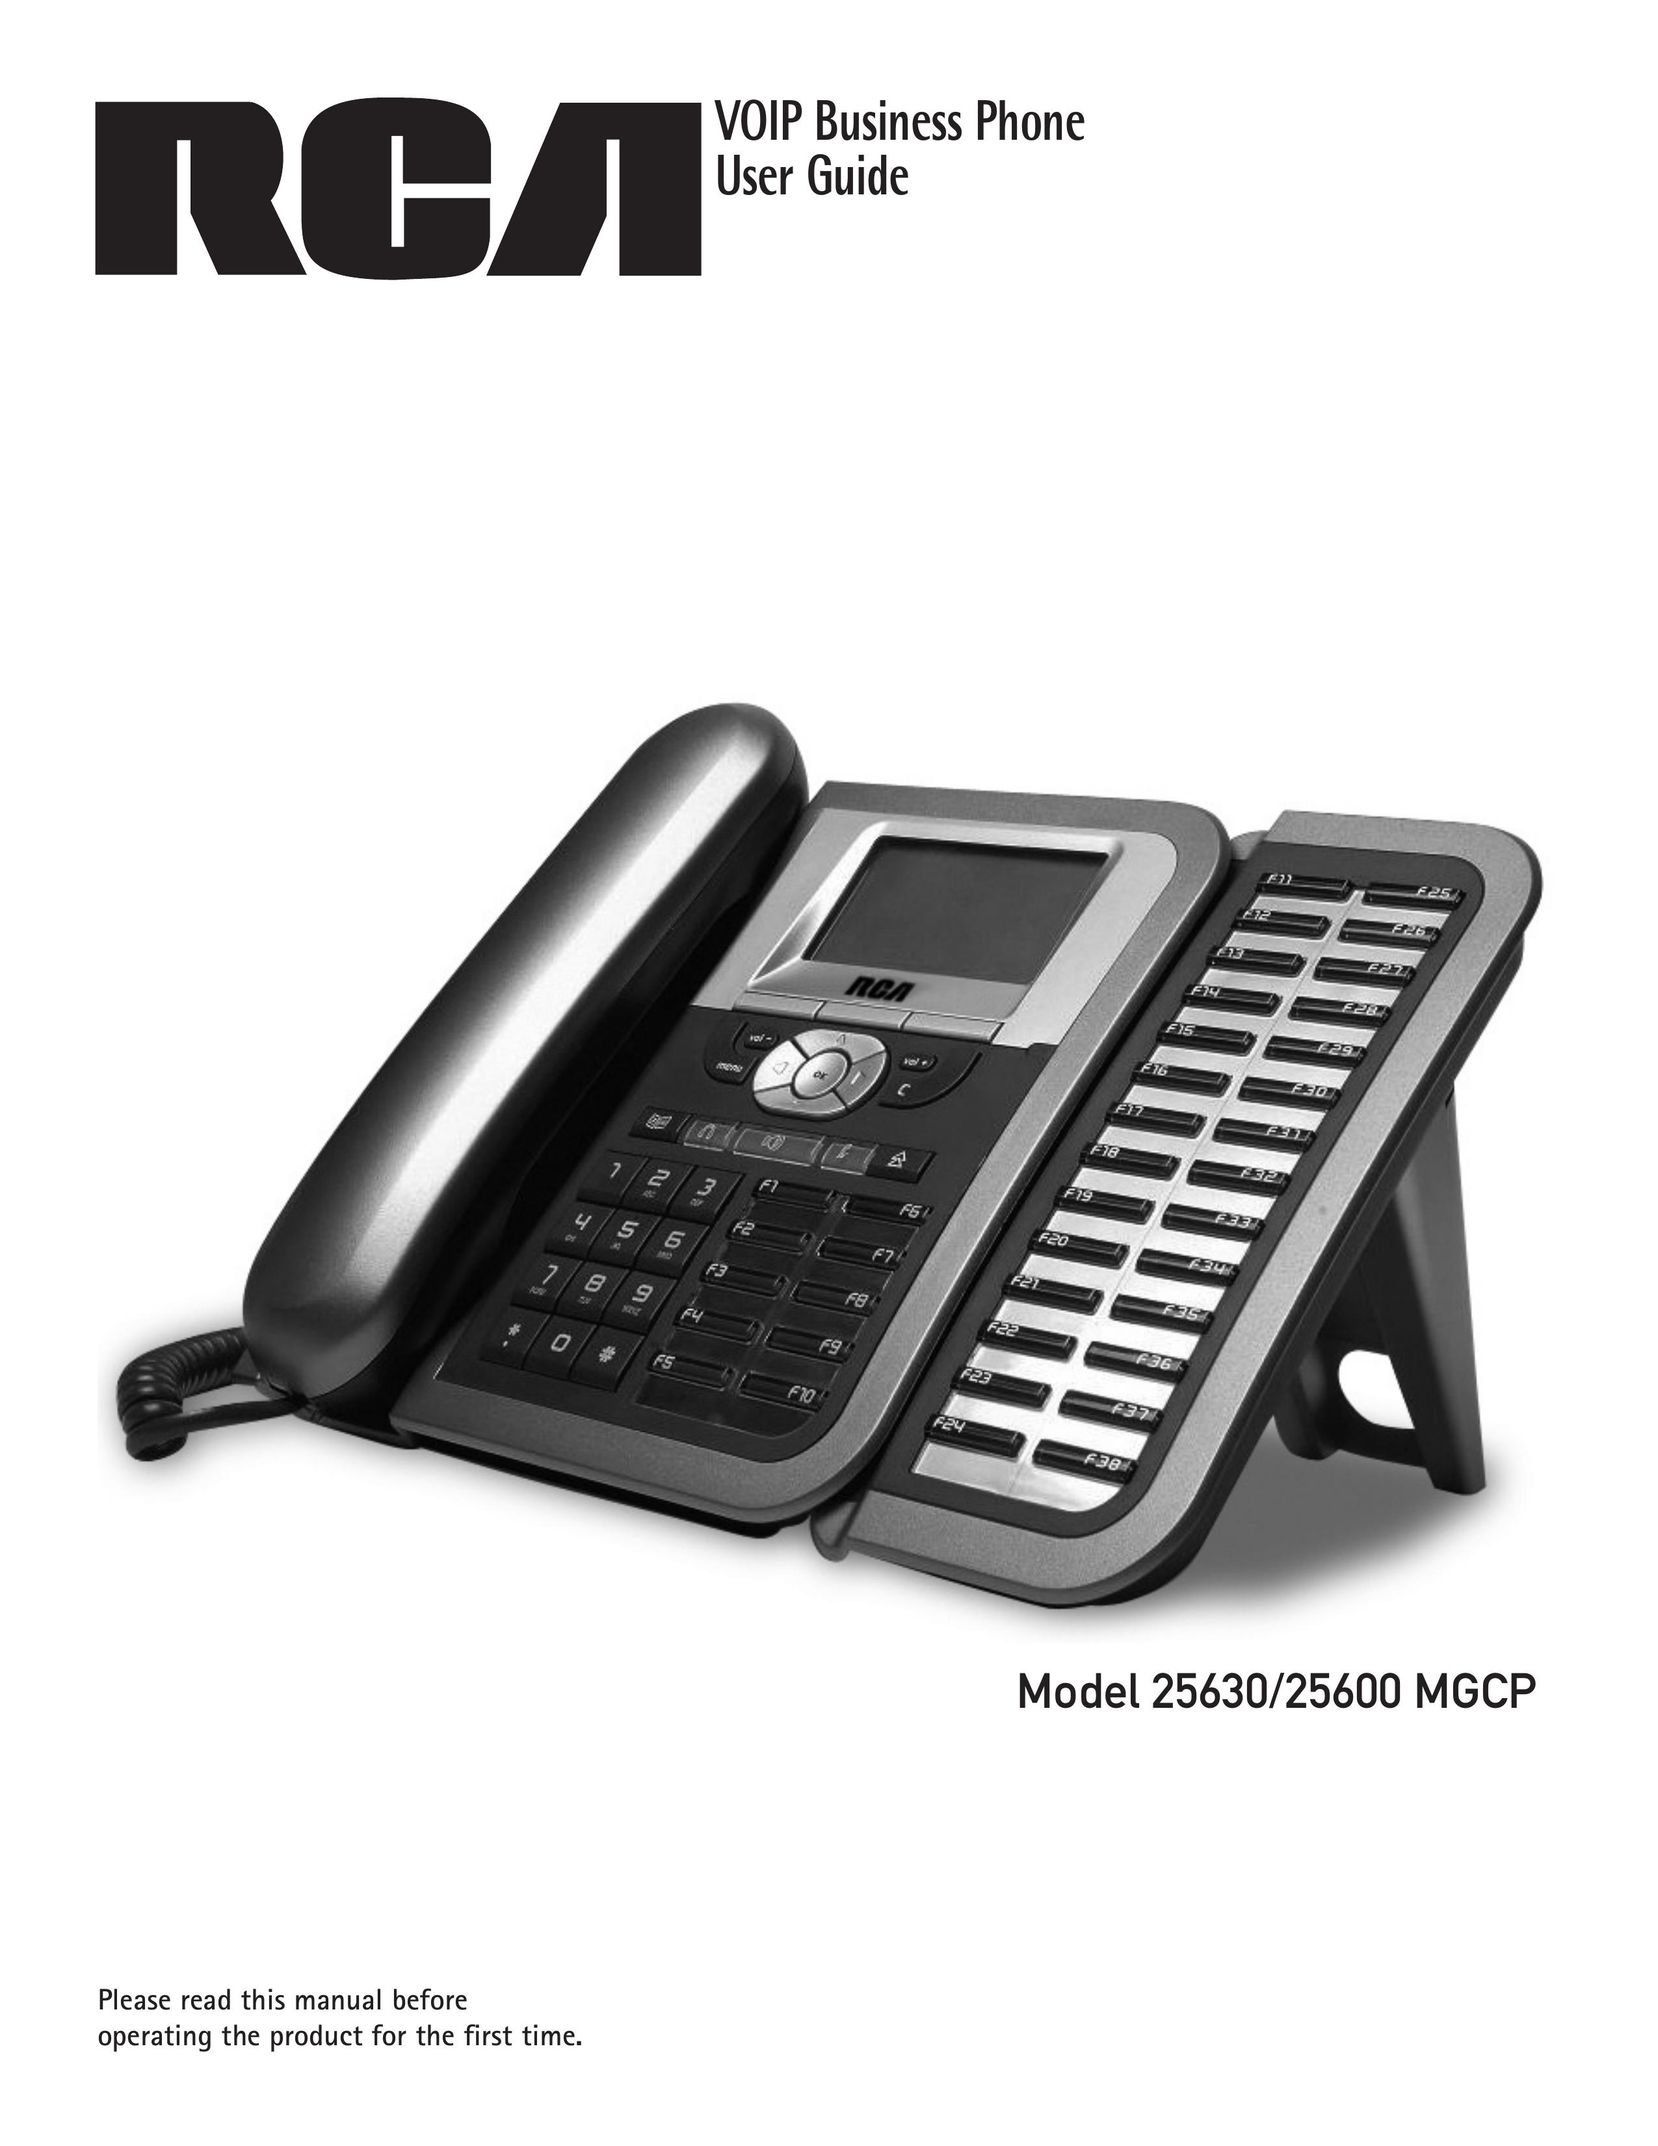 GE 25600 MGCP IP Phone User Manual